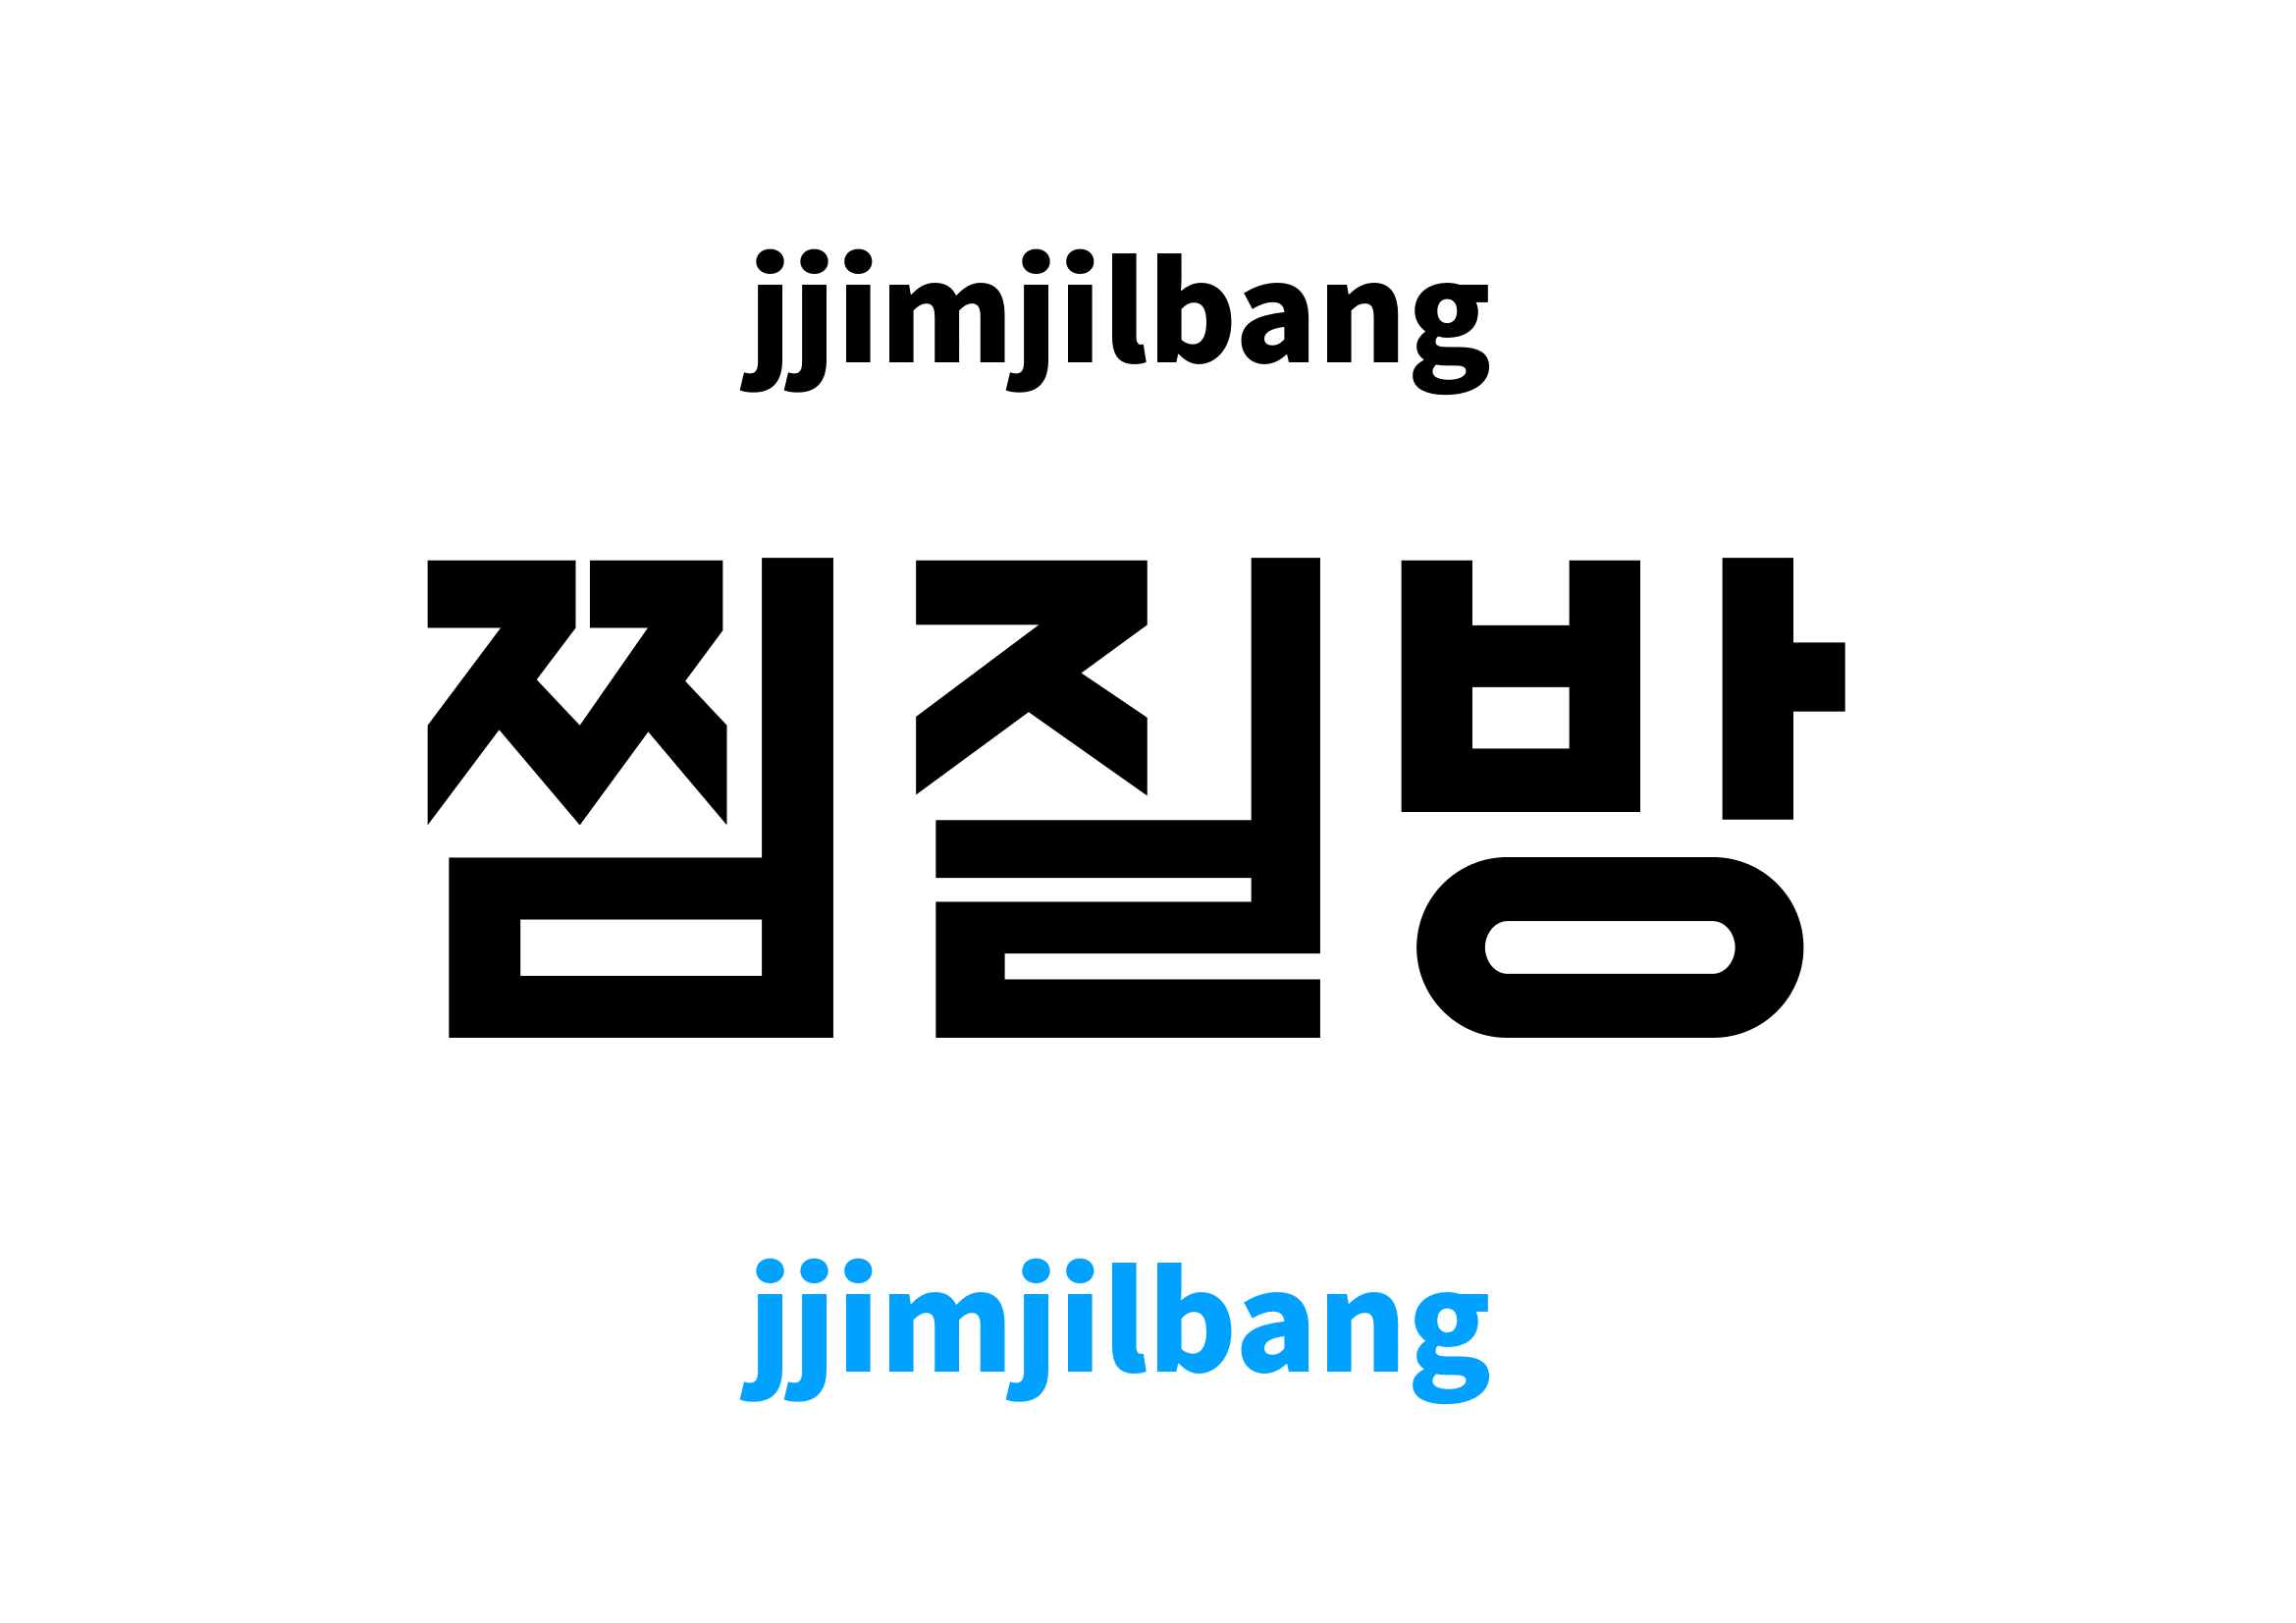 jjimjilbang in Korean, 찜질방 meaning